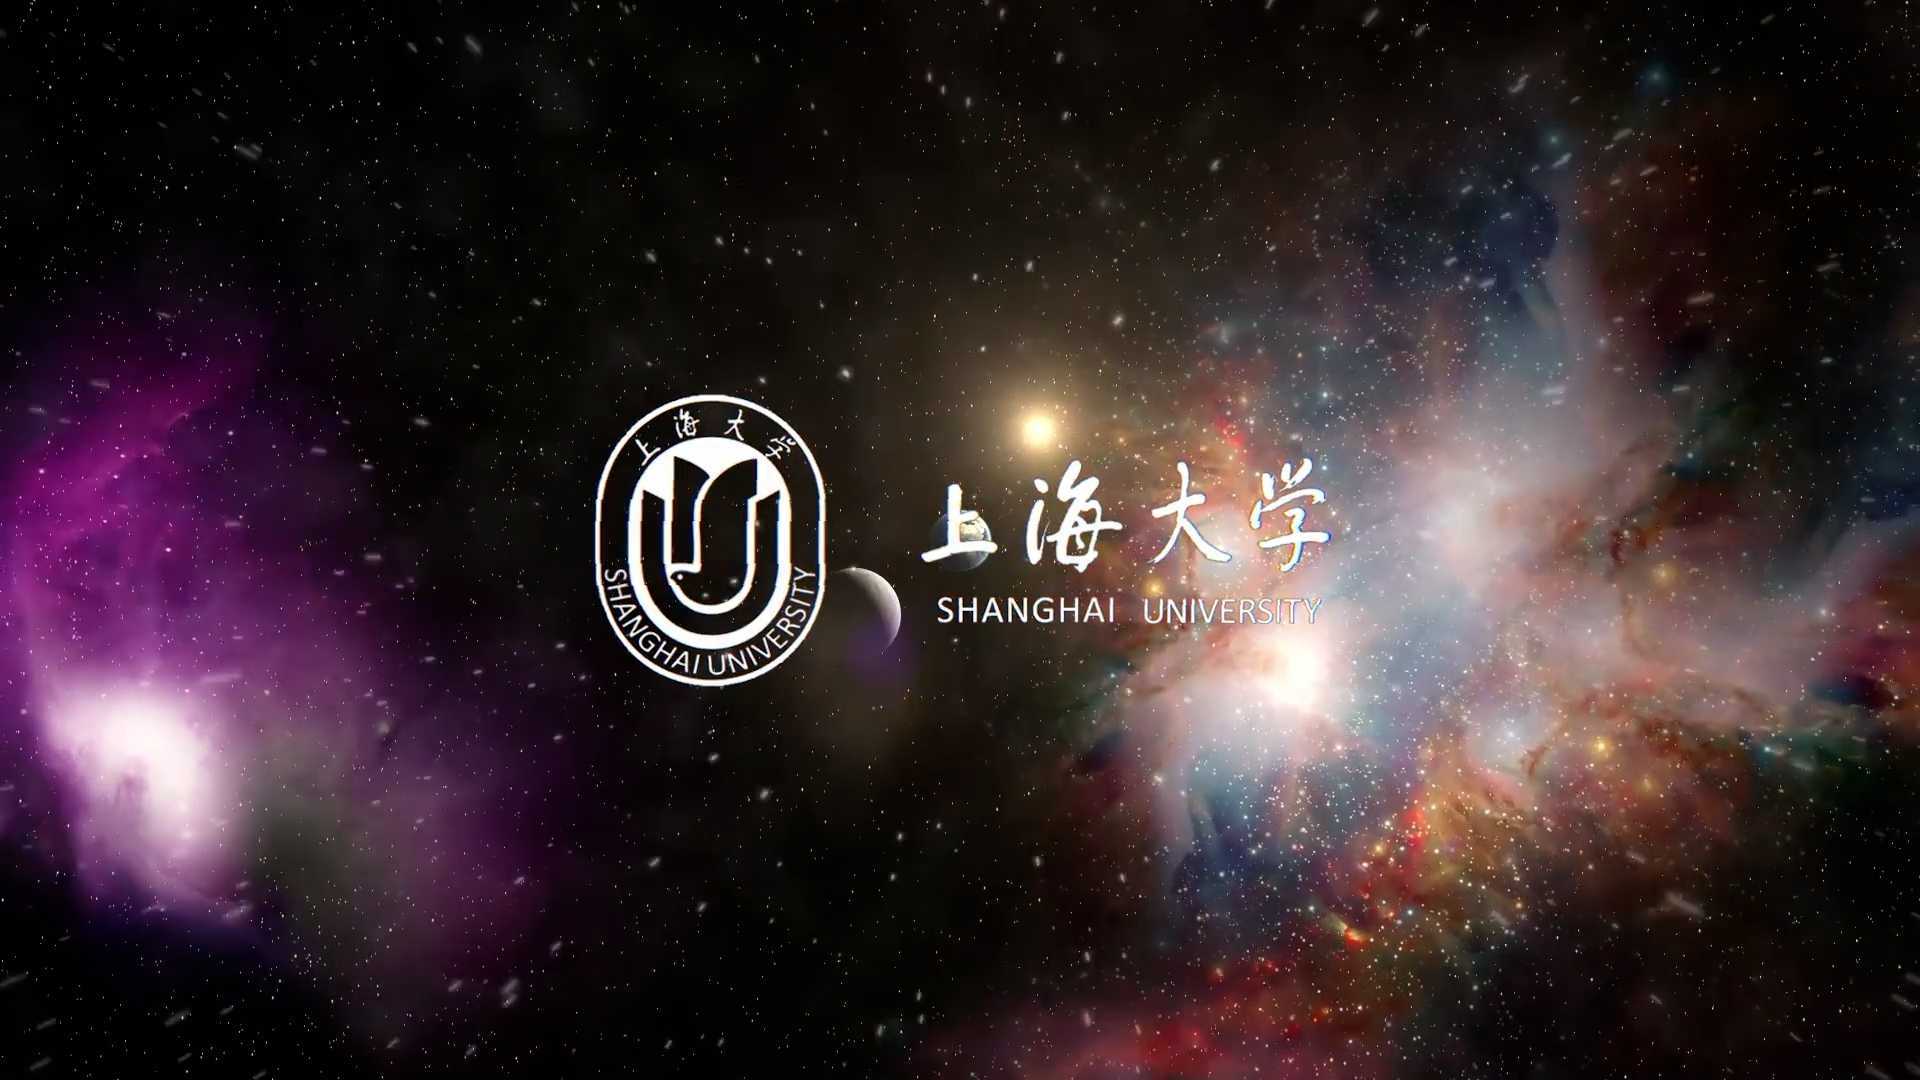 上海大学航天日宣传片《星辰大海》